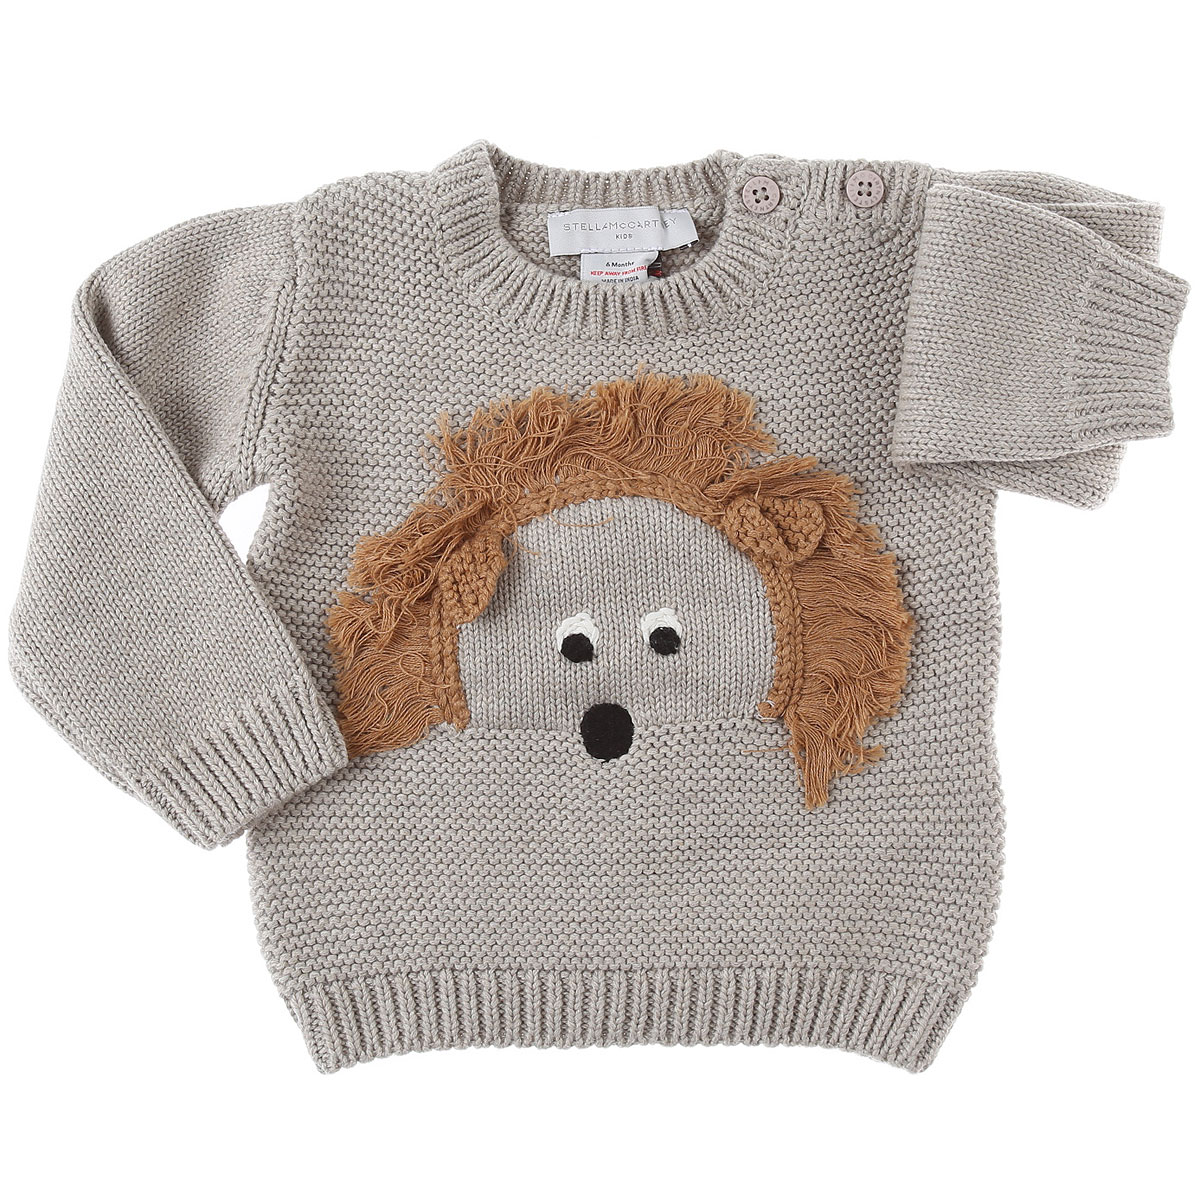 Stella McCartney Baby Pullover für Jungen Günstig im Sale, Grau Beige, Baumwolle, 2017, 12 M 18M 3M 6M